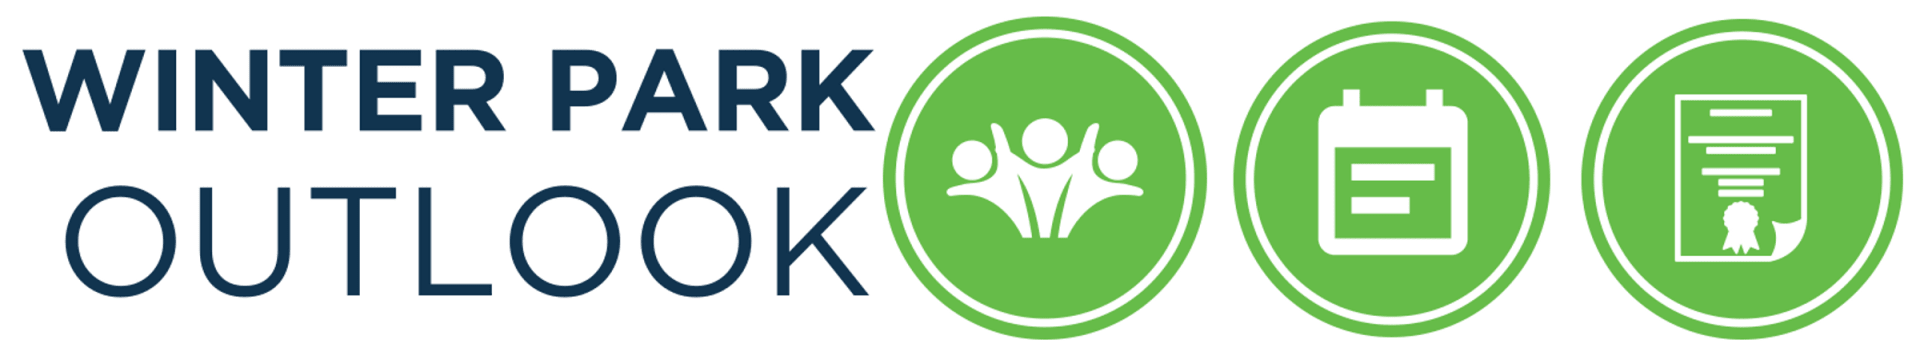 Outlook Logo - Winter Park Outlook Park Chamber of Commerce, FL